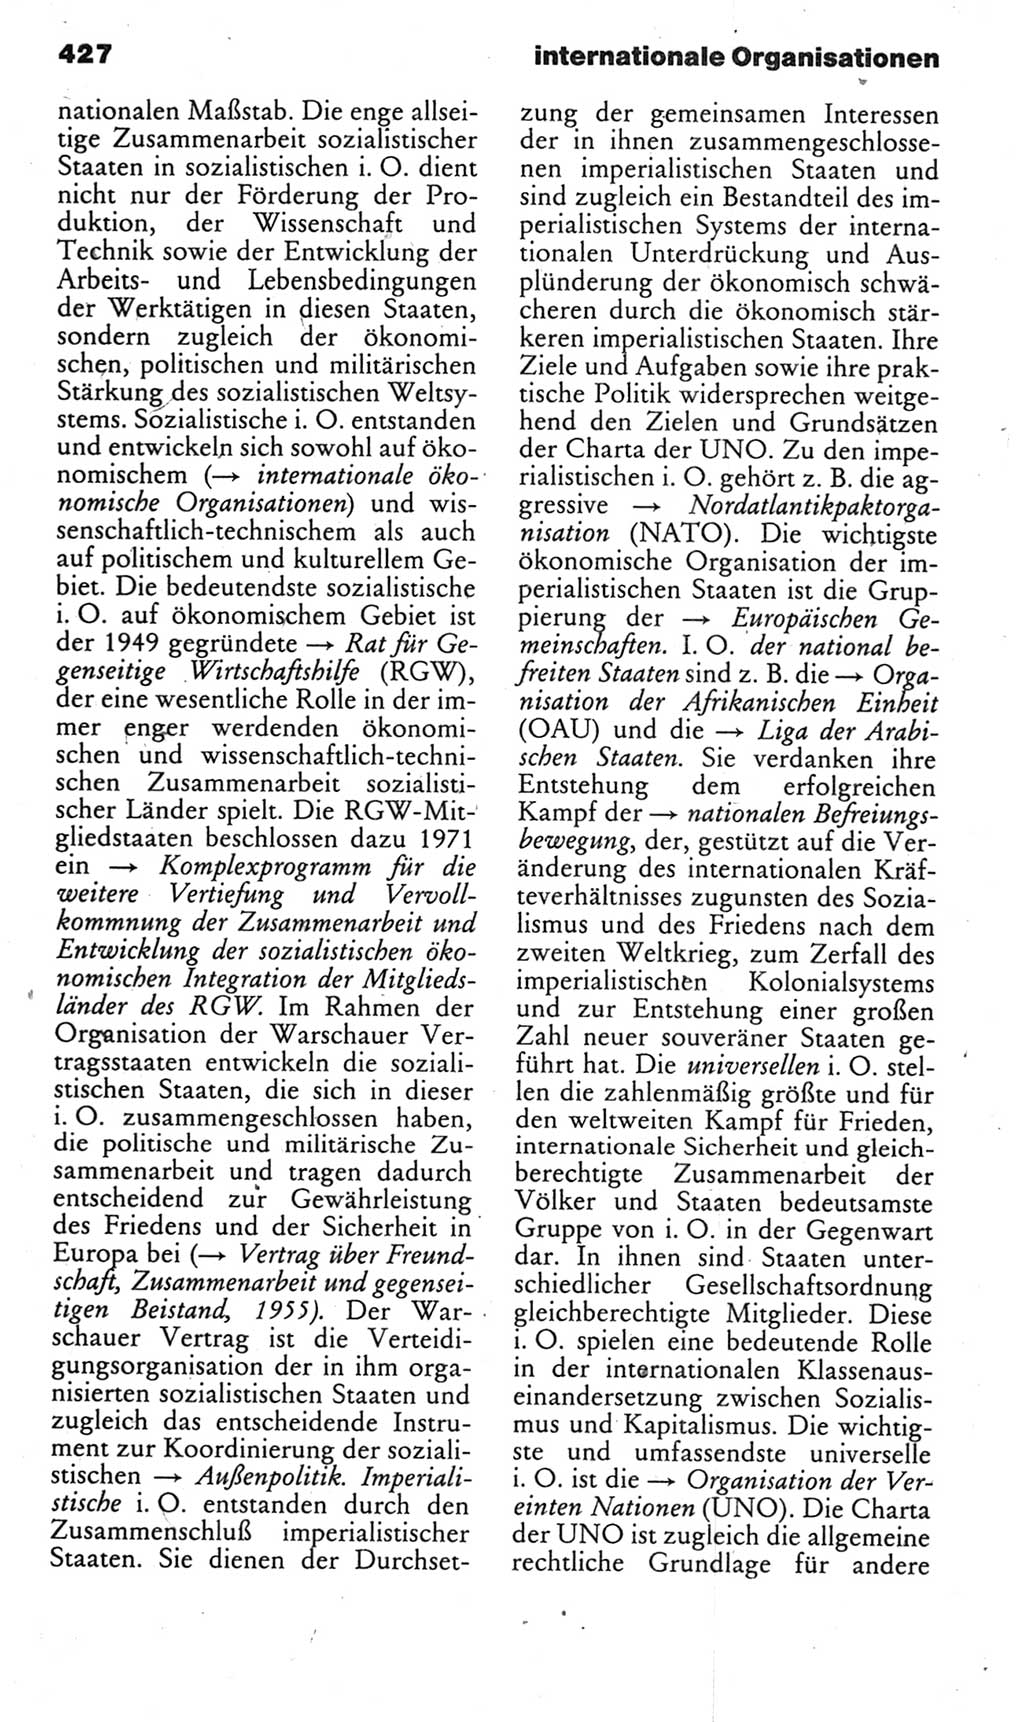 Kleines politisches Wörterbuch [Deutsche Demokratische Republik (DDR)] 1985, Seite 427 (Kl. pol. Wb. DDR 1985, S. 427)